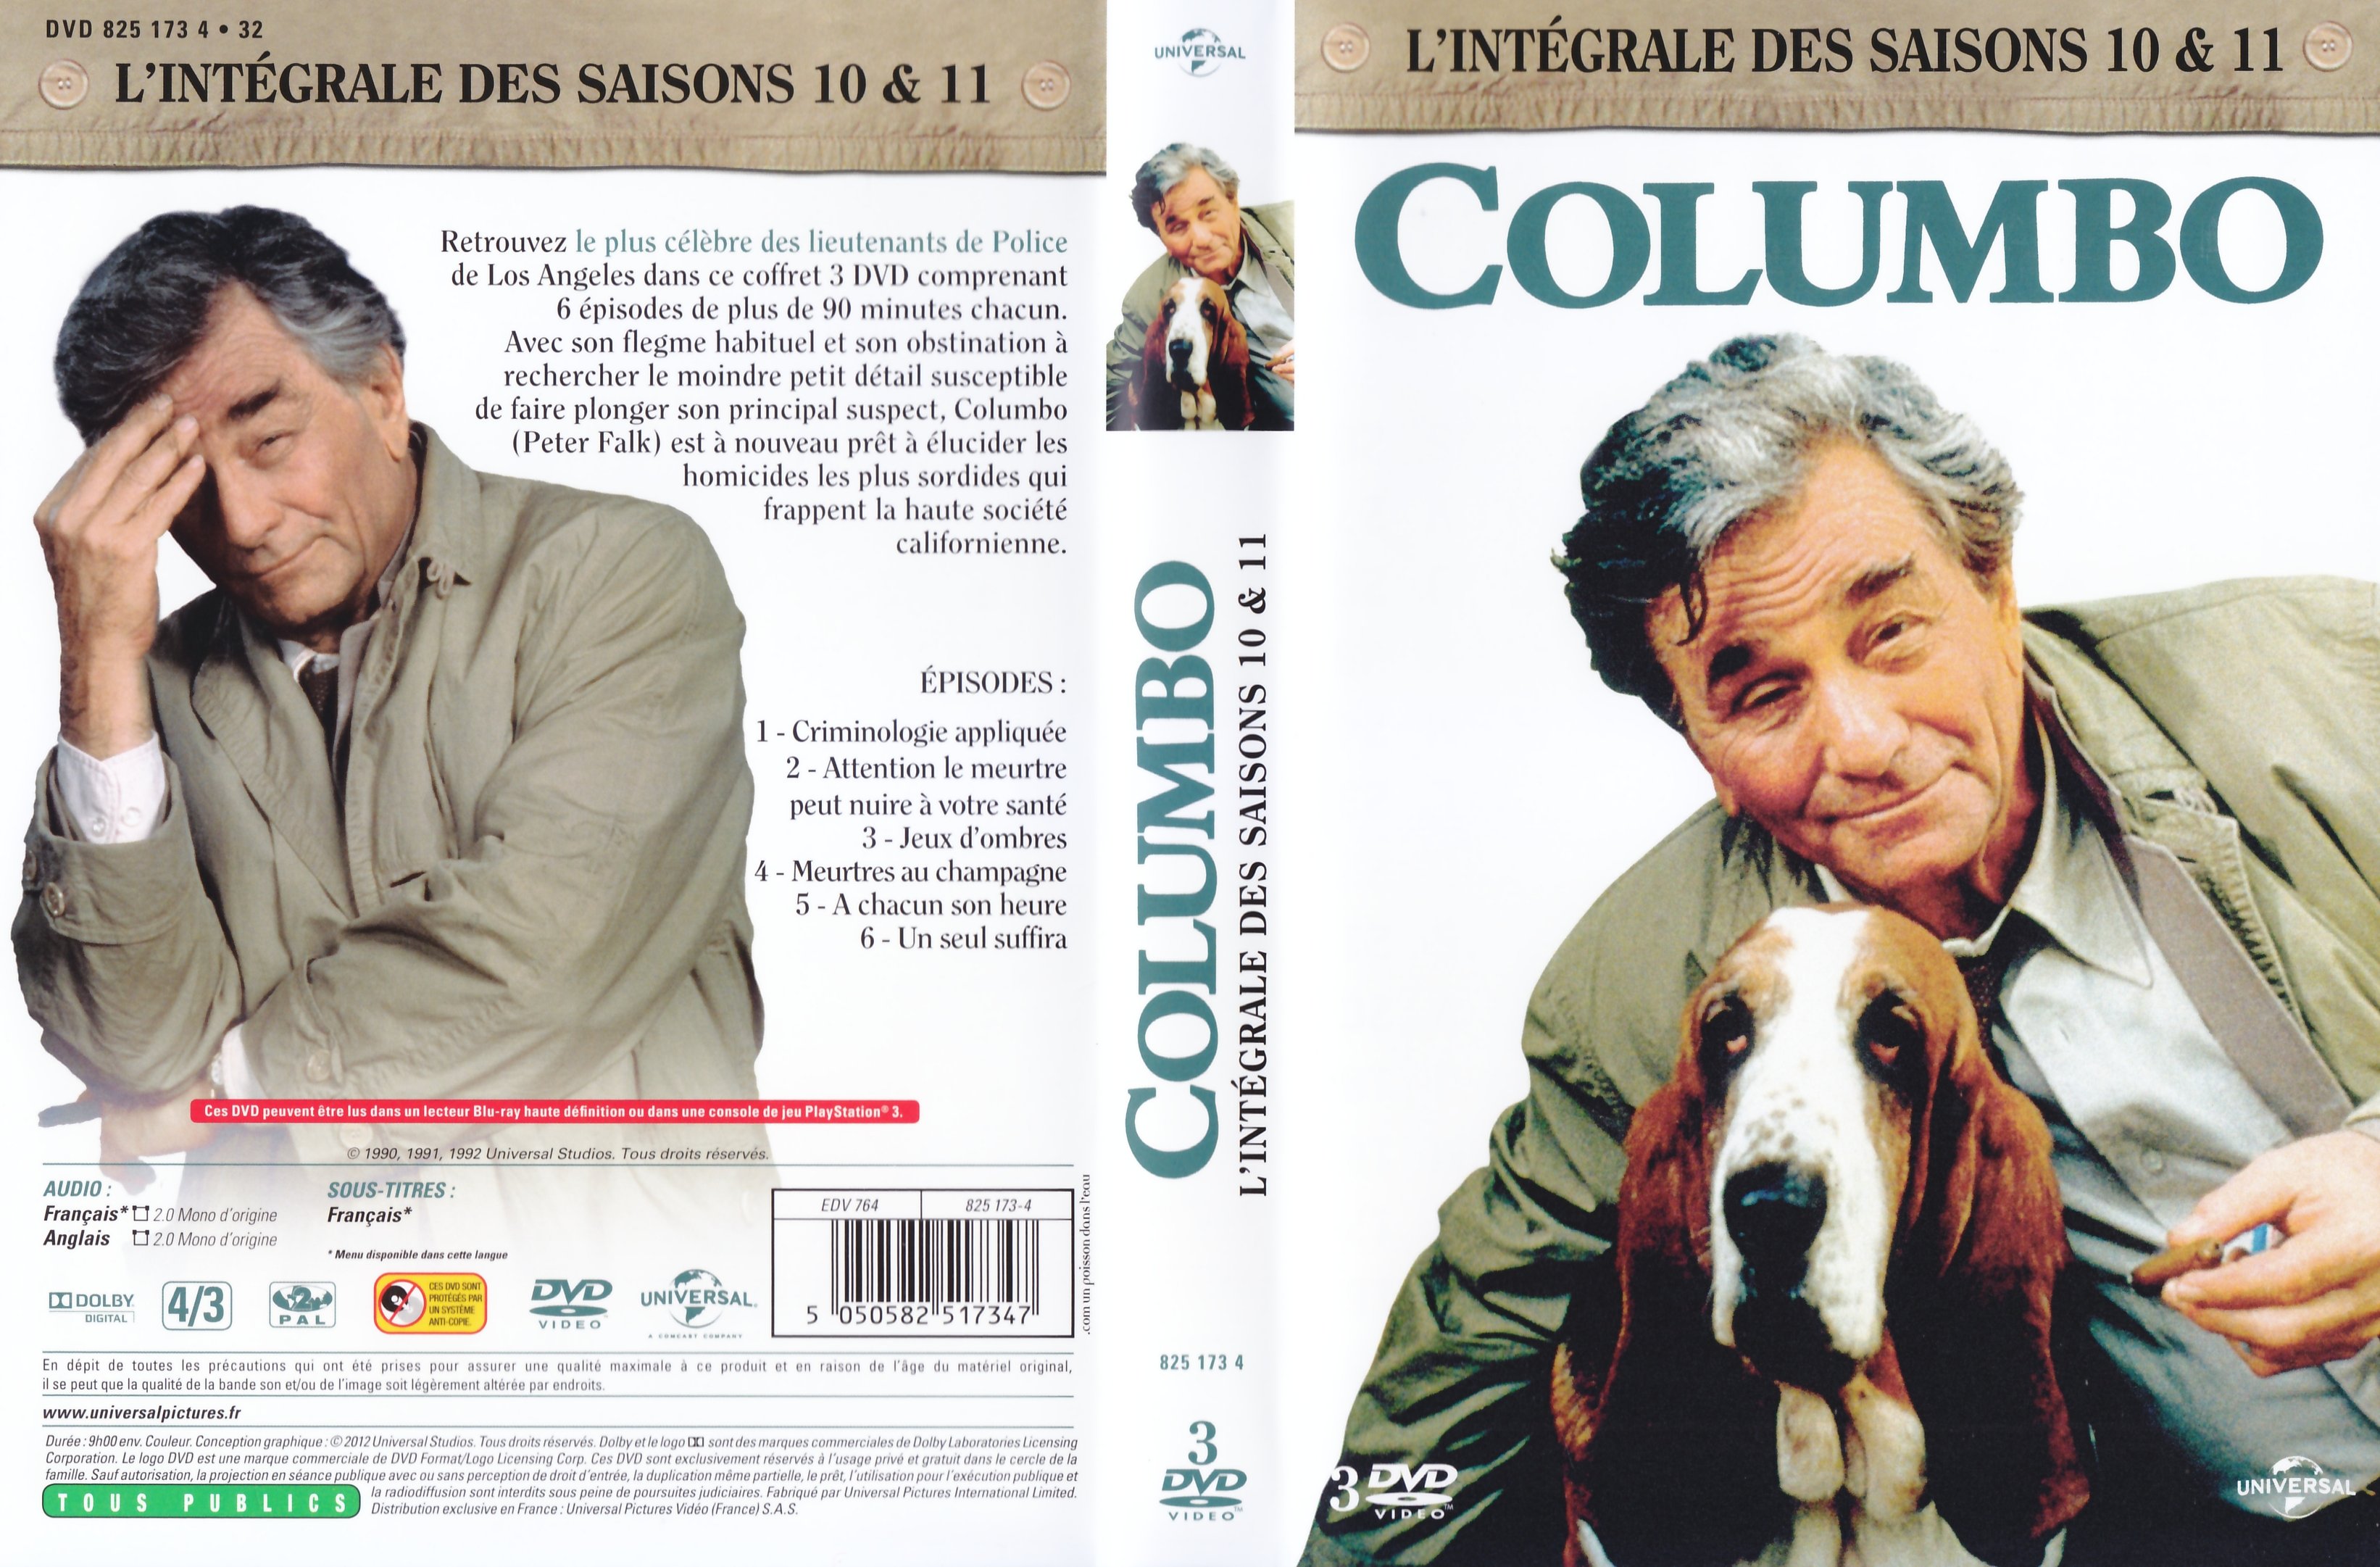 Jaquette DVD Columbo Saison 10 et 11 COFFRET V2